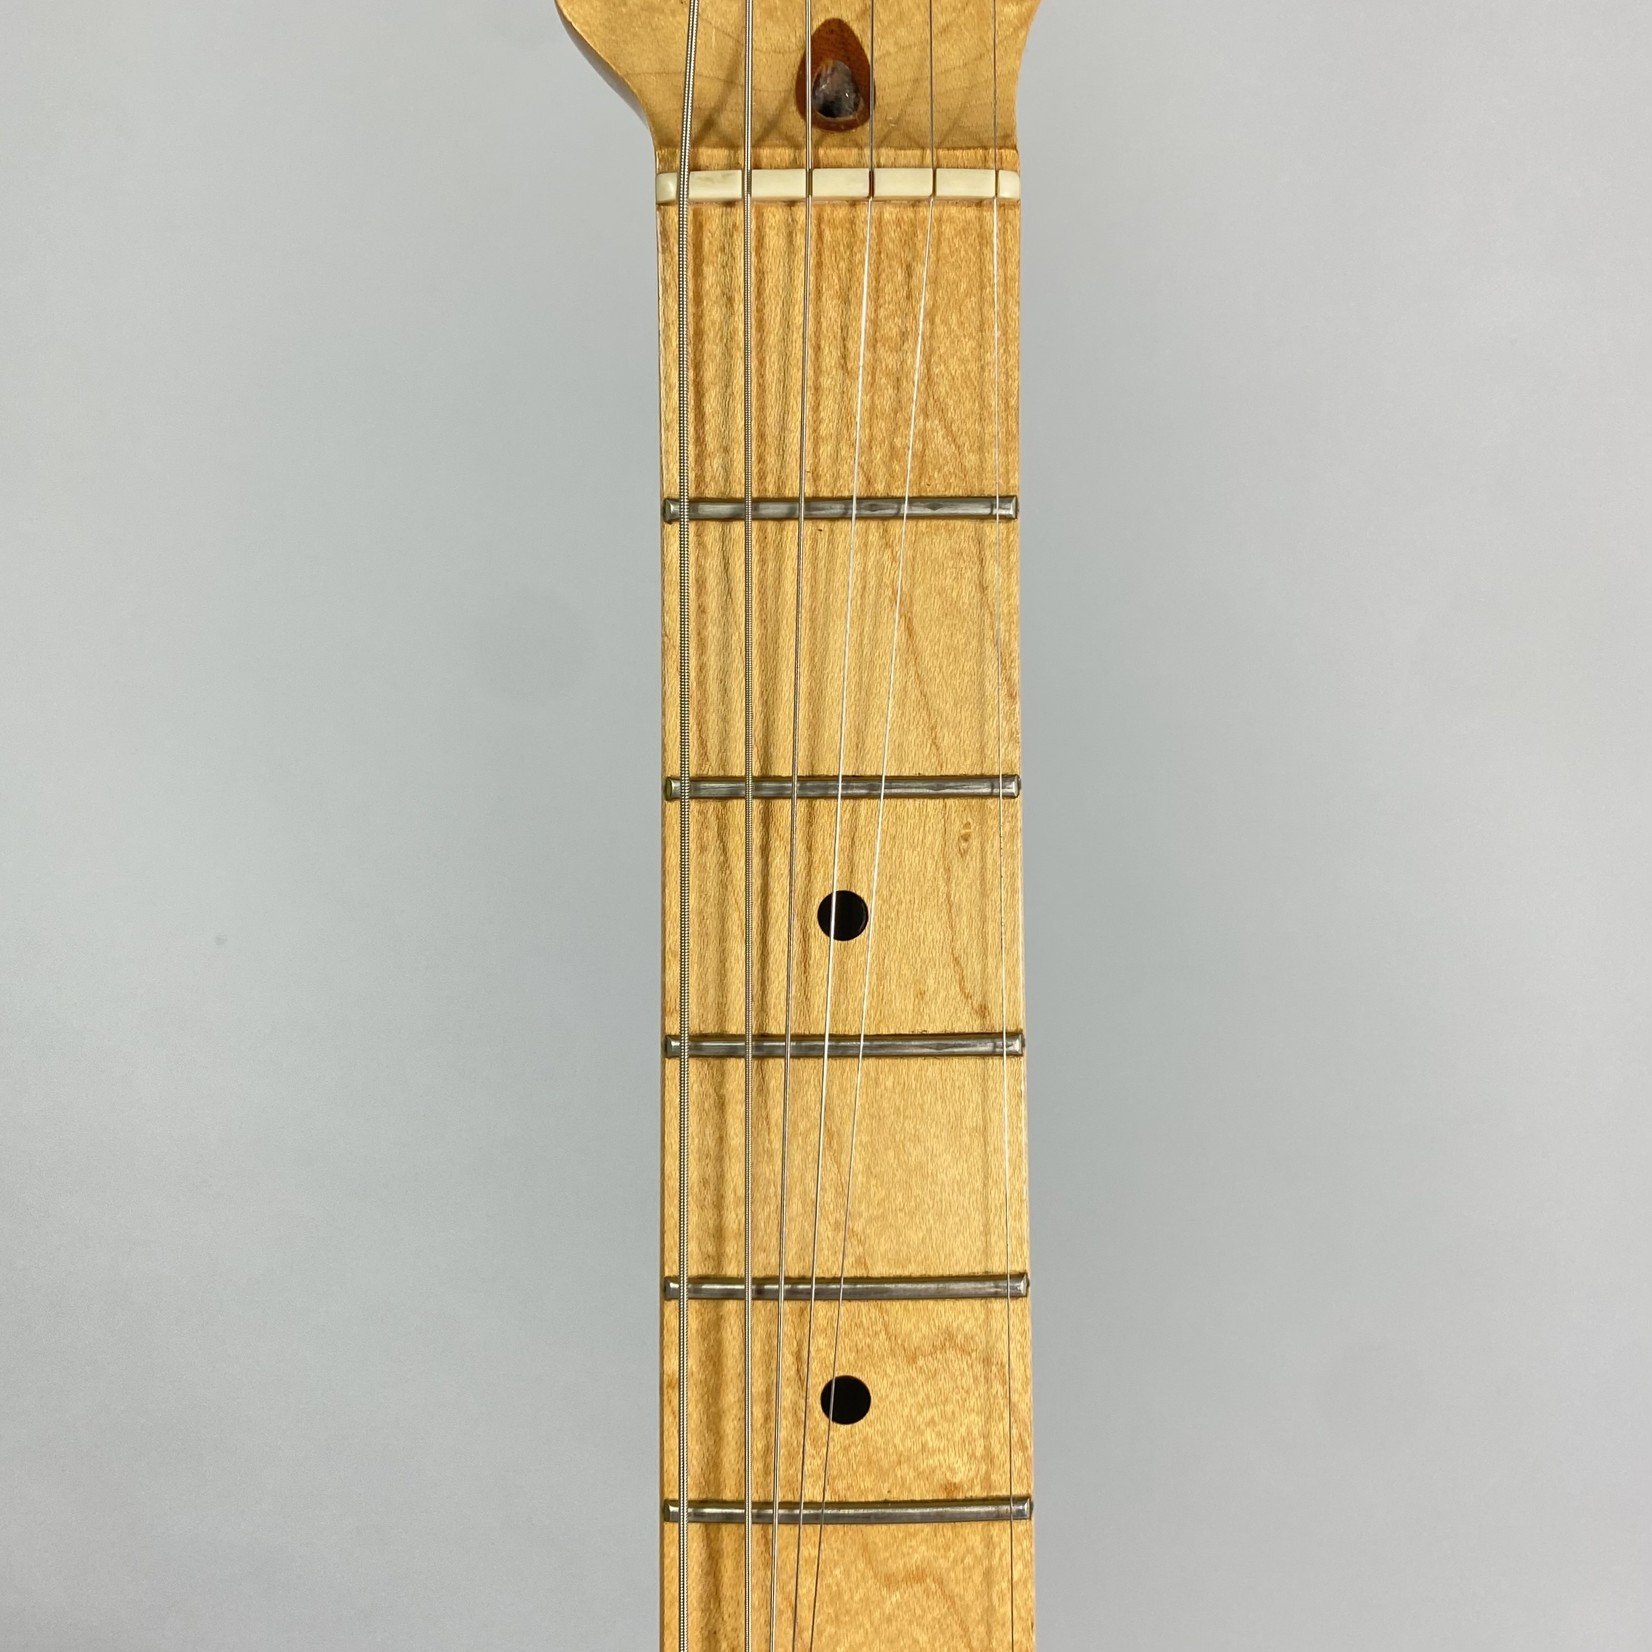 Fender 1983 Fender "front jack" Stratocaster Blue